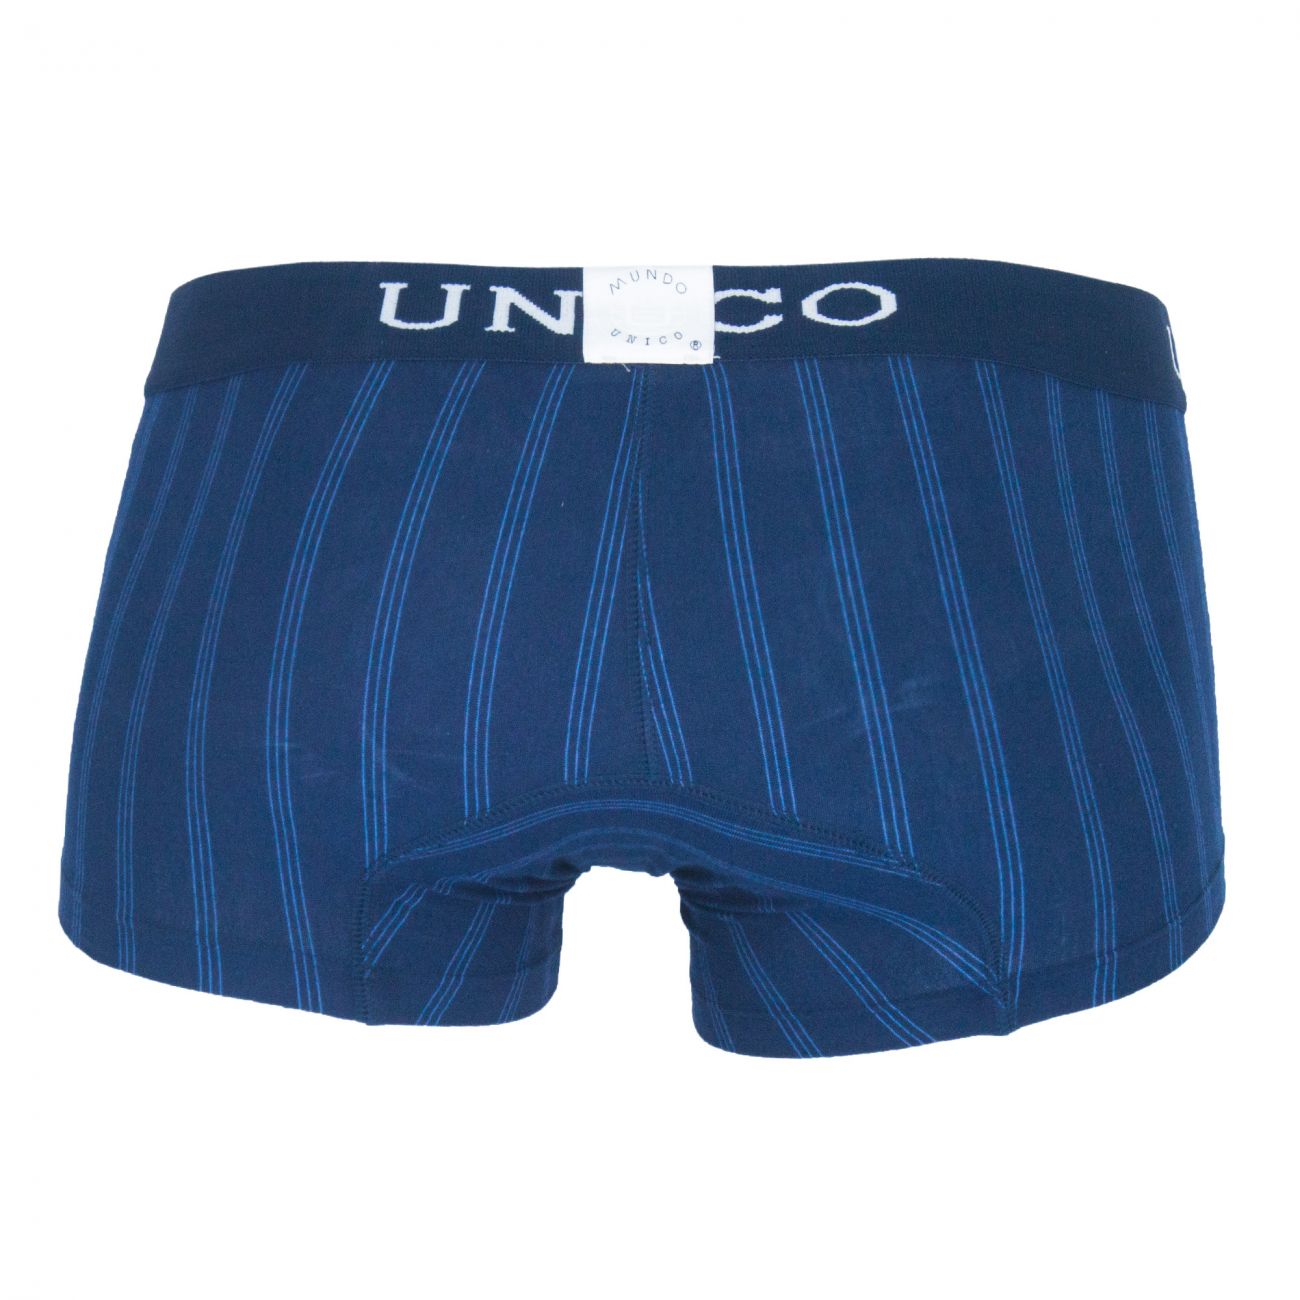 Unico (1410010010582) Boxer Briefs Paralelo Cotton